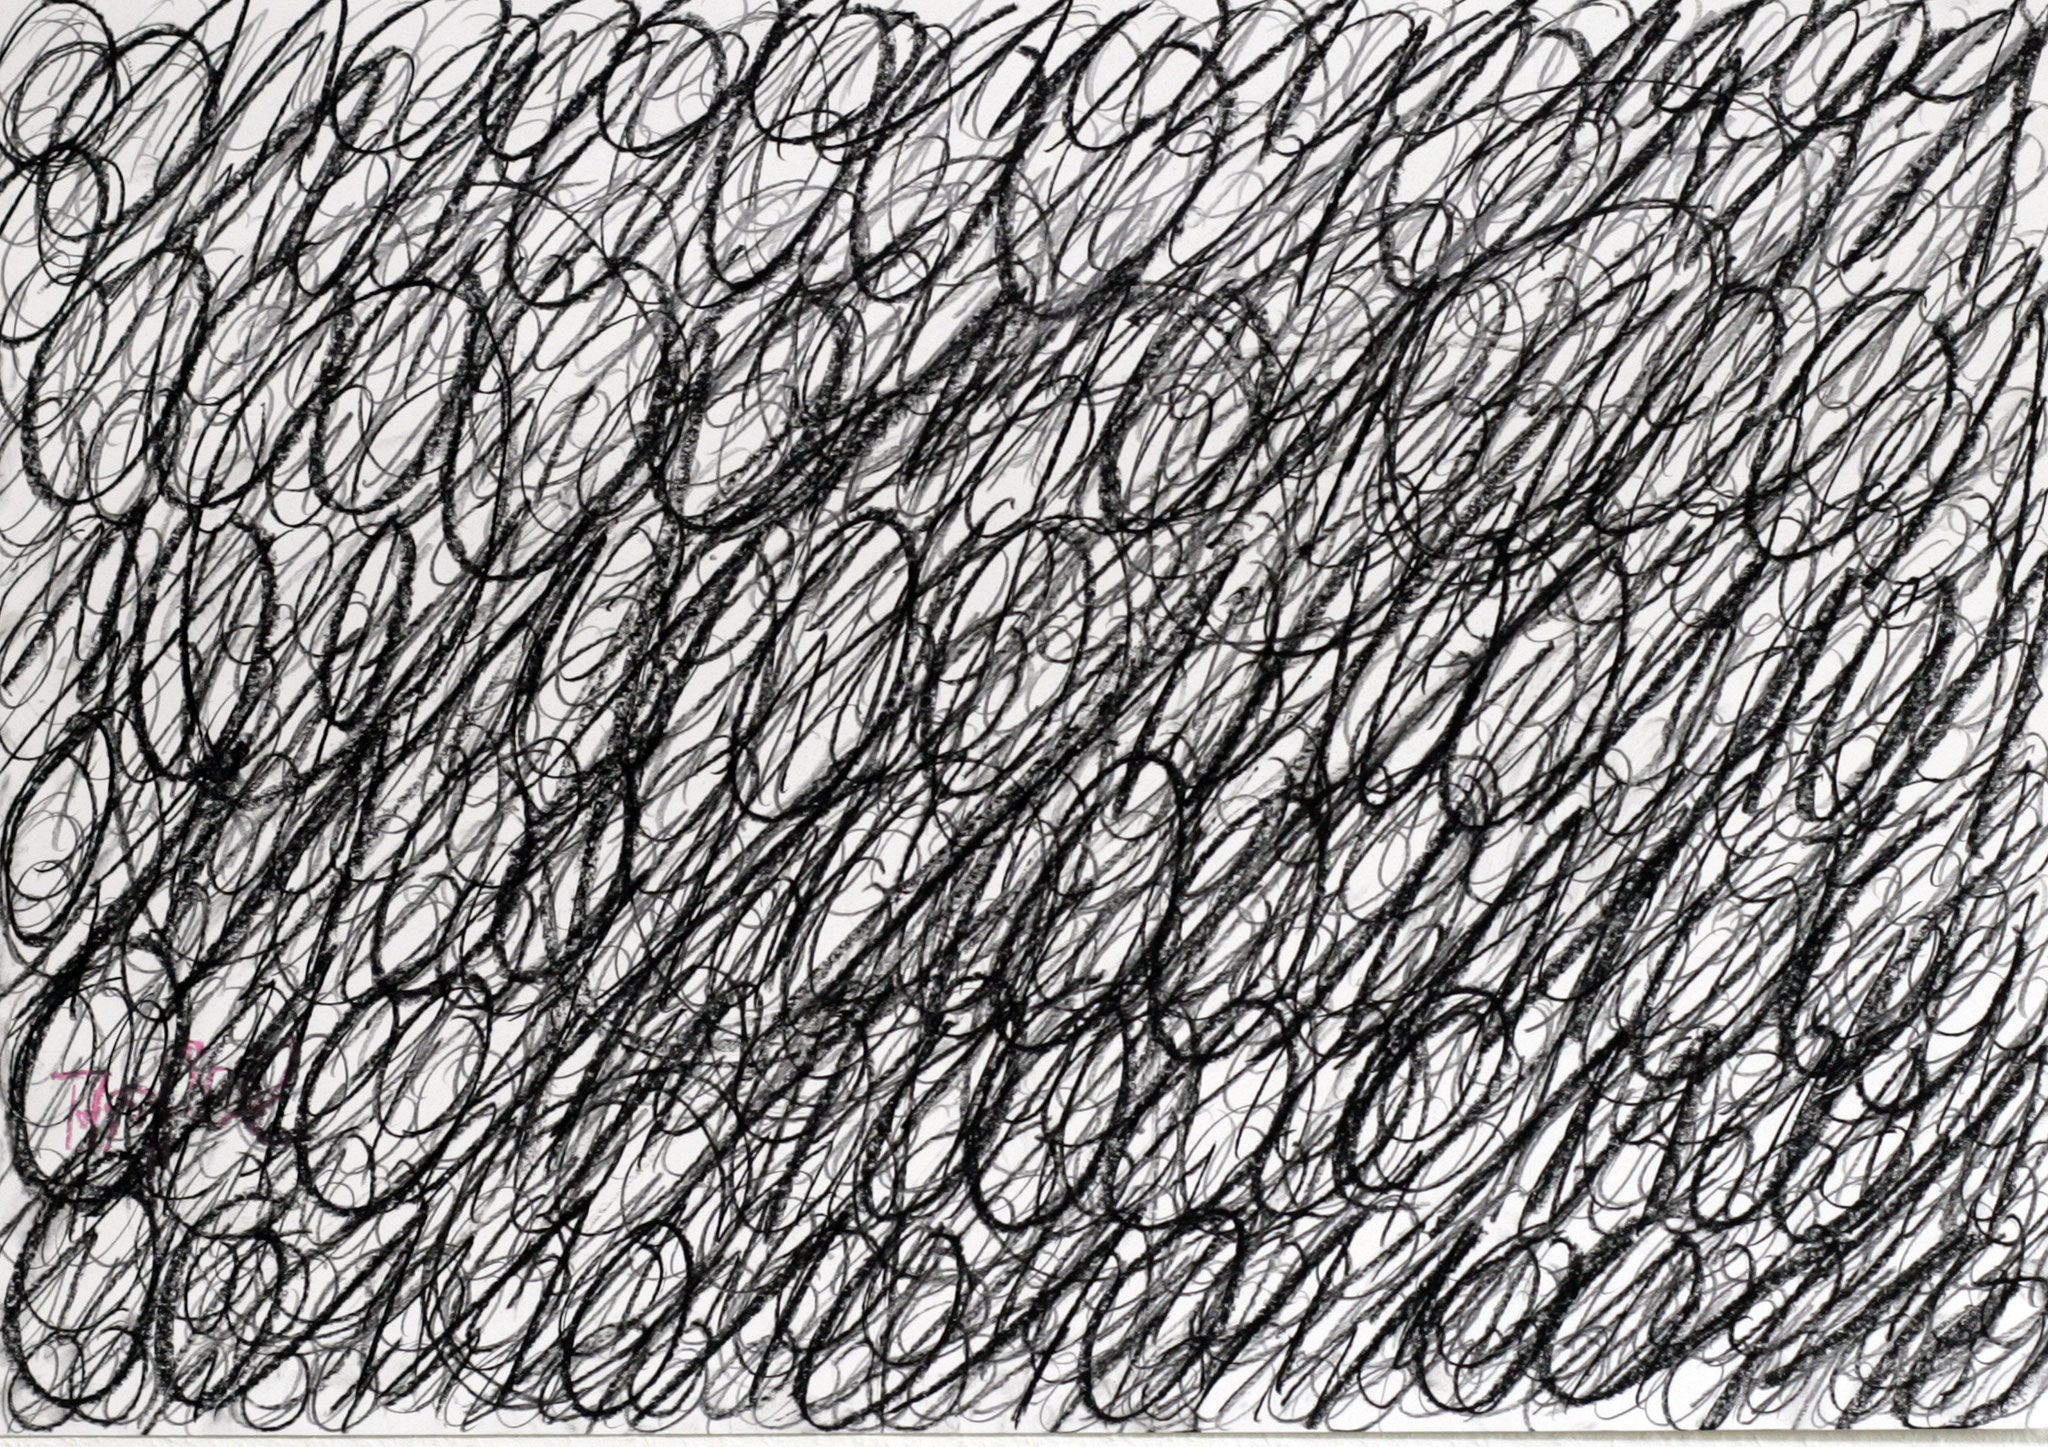 apfel einsnull I - 2014 - Kohle auf Papier - 44 x 63 cm